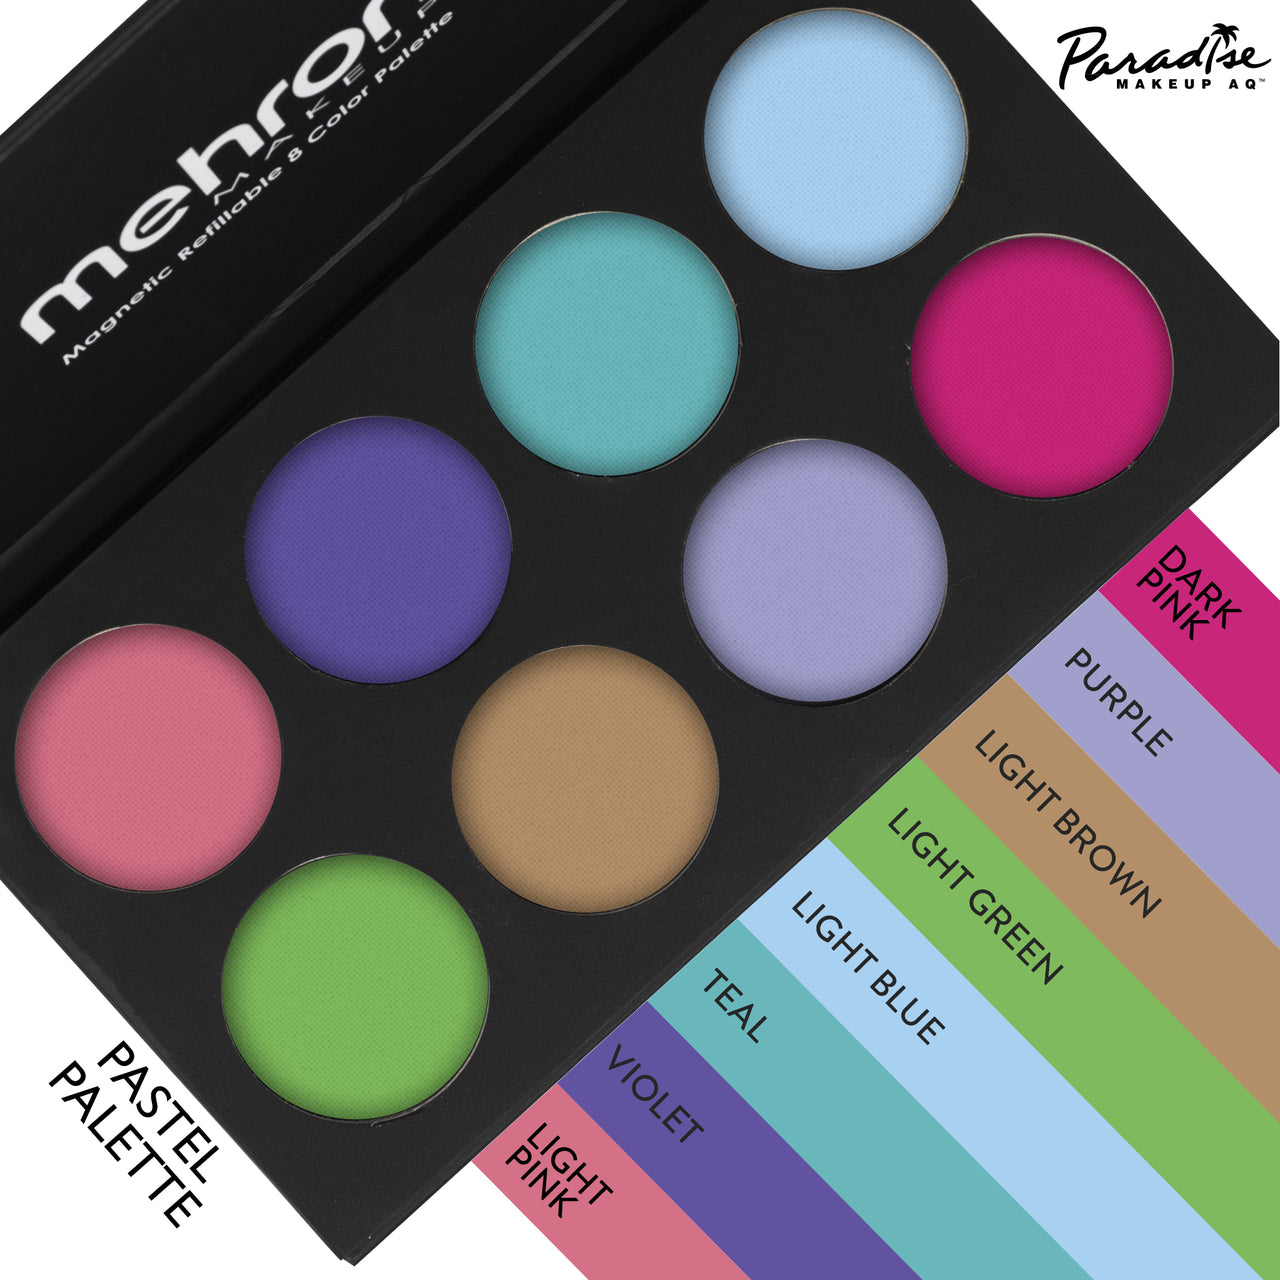 Mehron Paradise Pro Palette AQ Pro A (12 Colors)